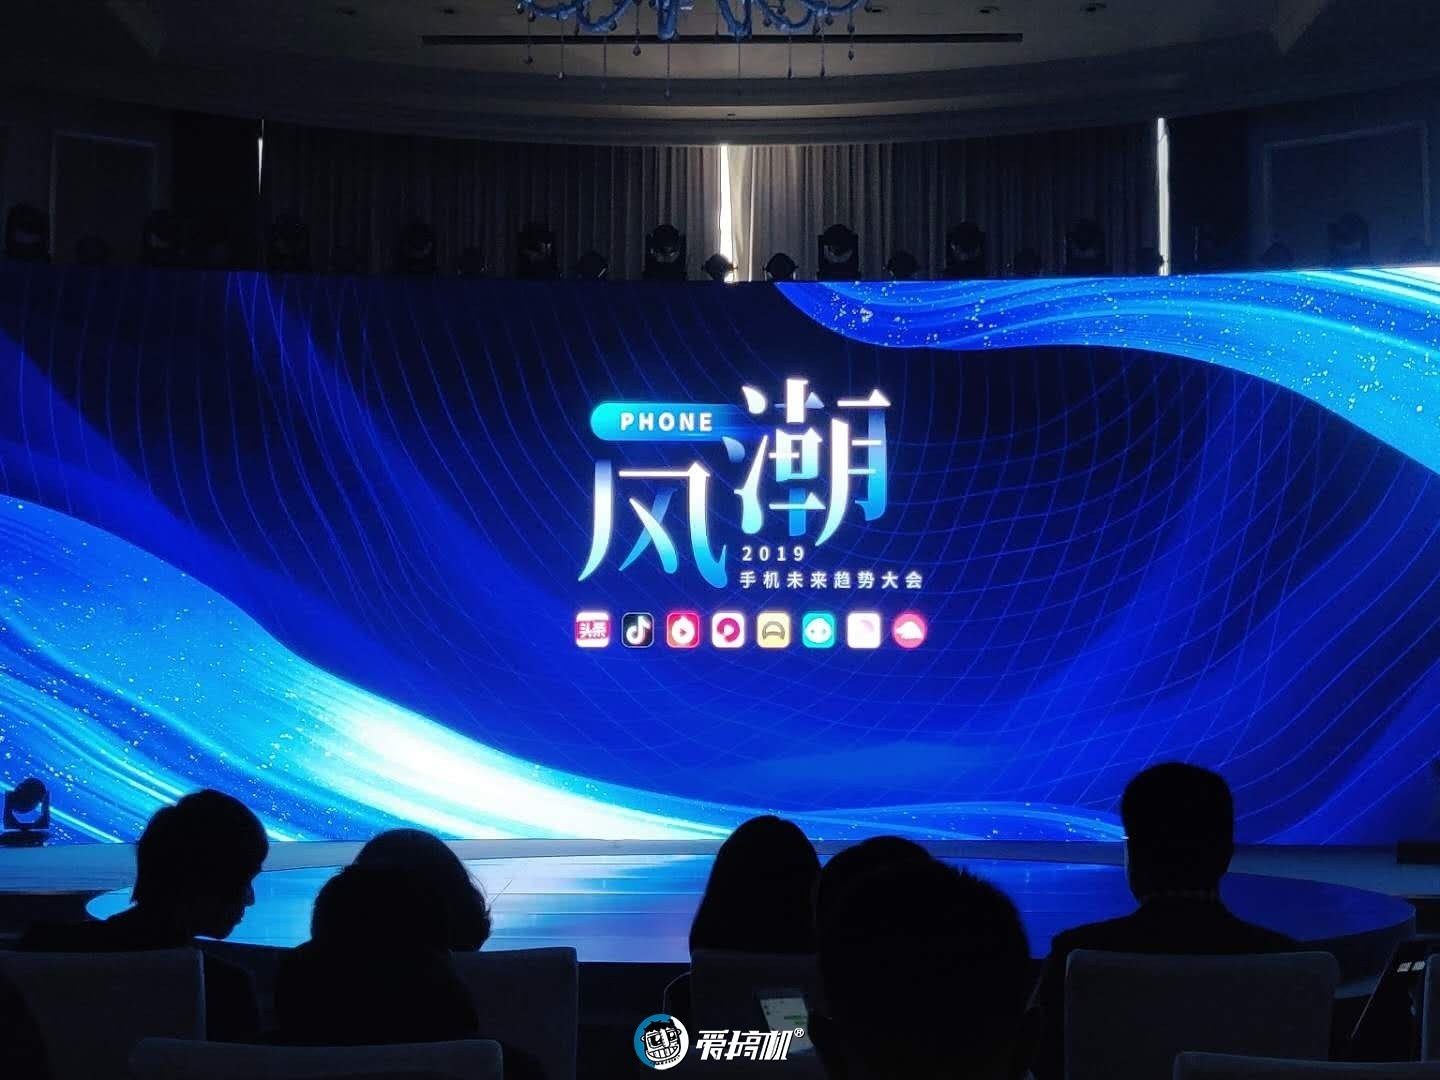 “华米OV蘋”五强并立，短期内5G带动销量有限